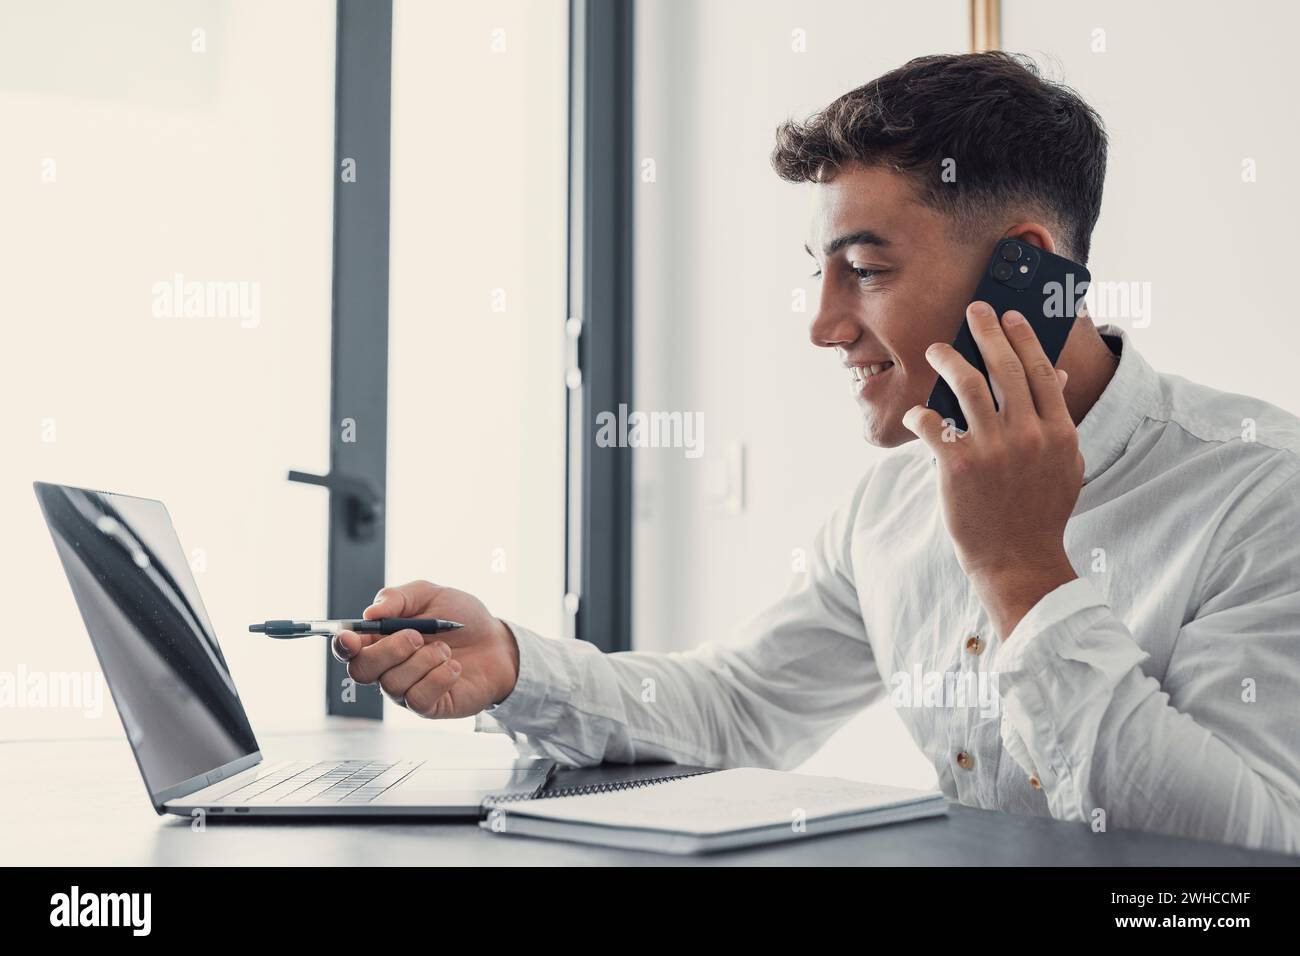 Un uomo d'affari sorridente che indossa occhiali che parlano al telefono, seduto alla scrivania con un computer portatile, un manager cordiale che si occupa della consulenza telefonica con i clienti, un uomo felice che chiacchiera con gli amici distratto dal lavoro Foto Stock